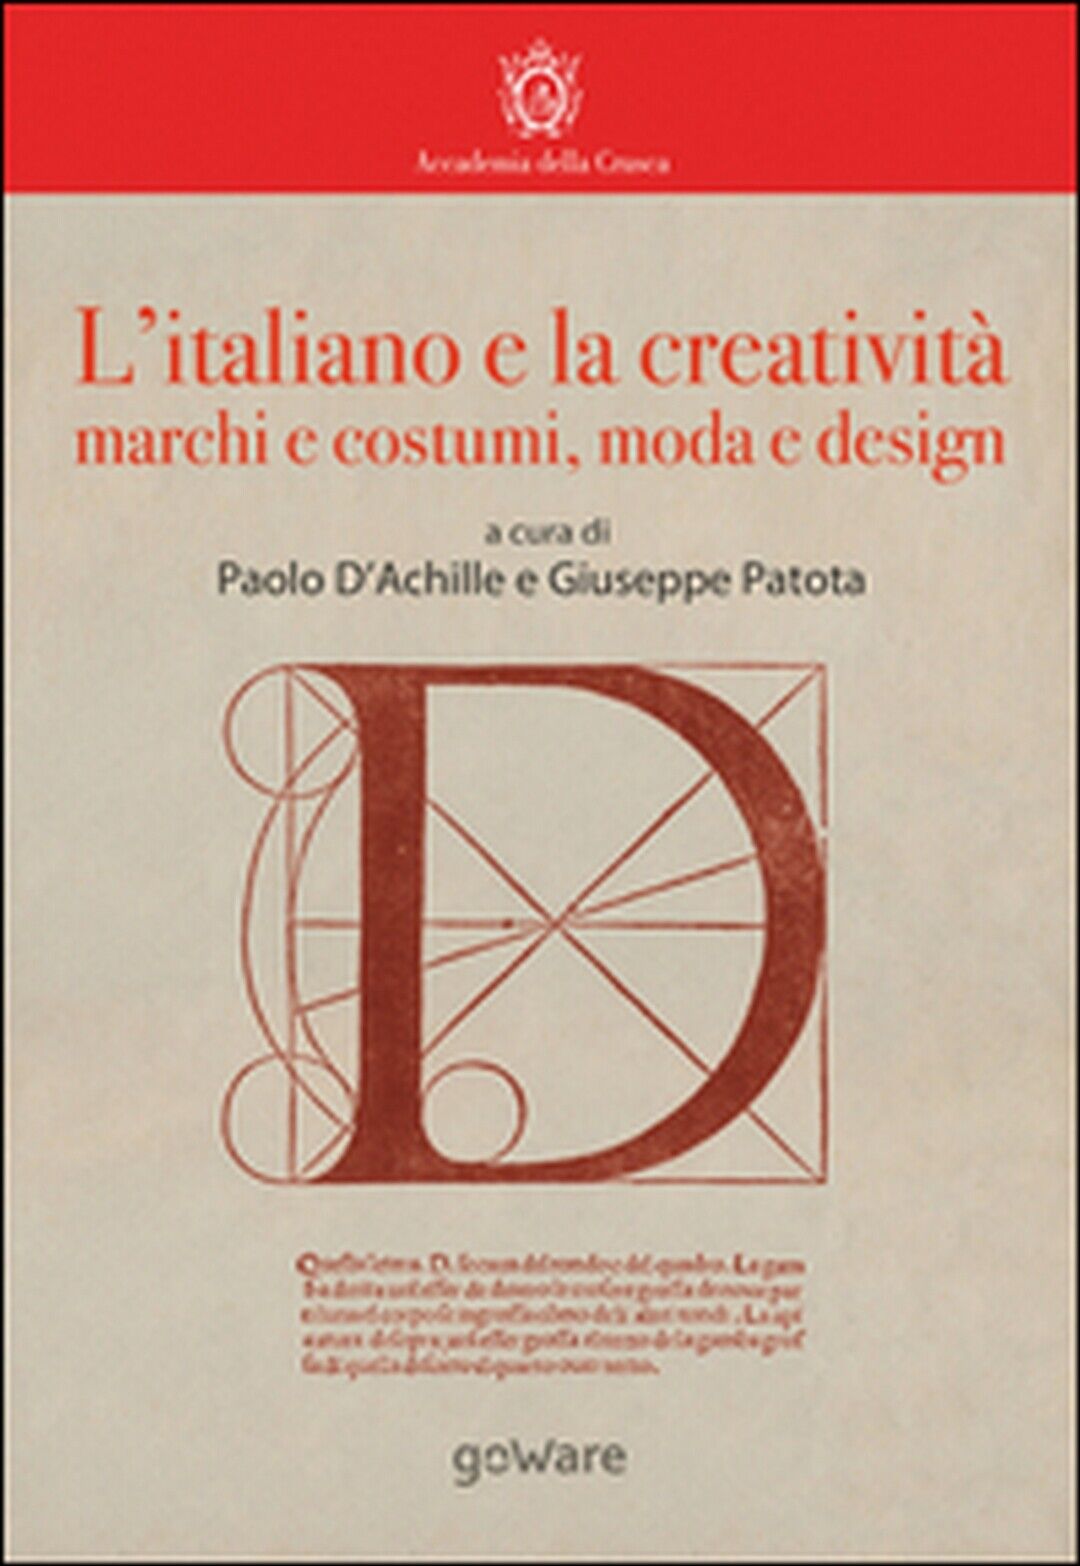 L'italiano e la creativit?. Marchi e costumi, moda e design, P. d'Achille, G. P.